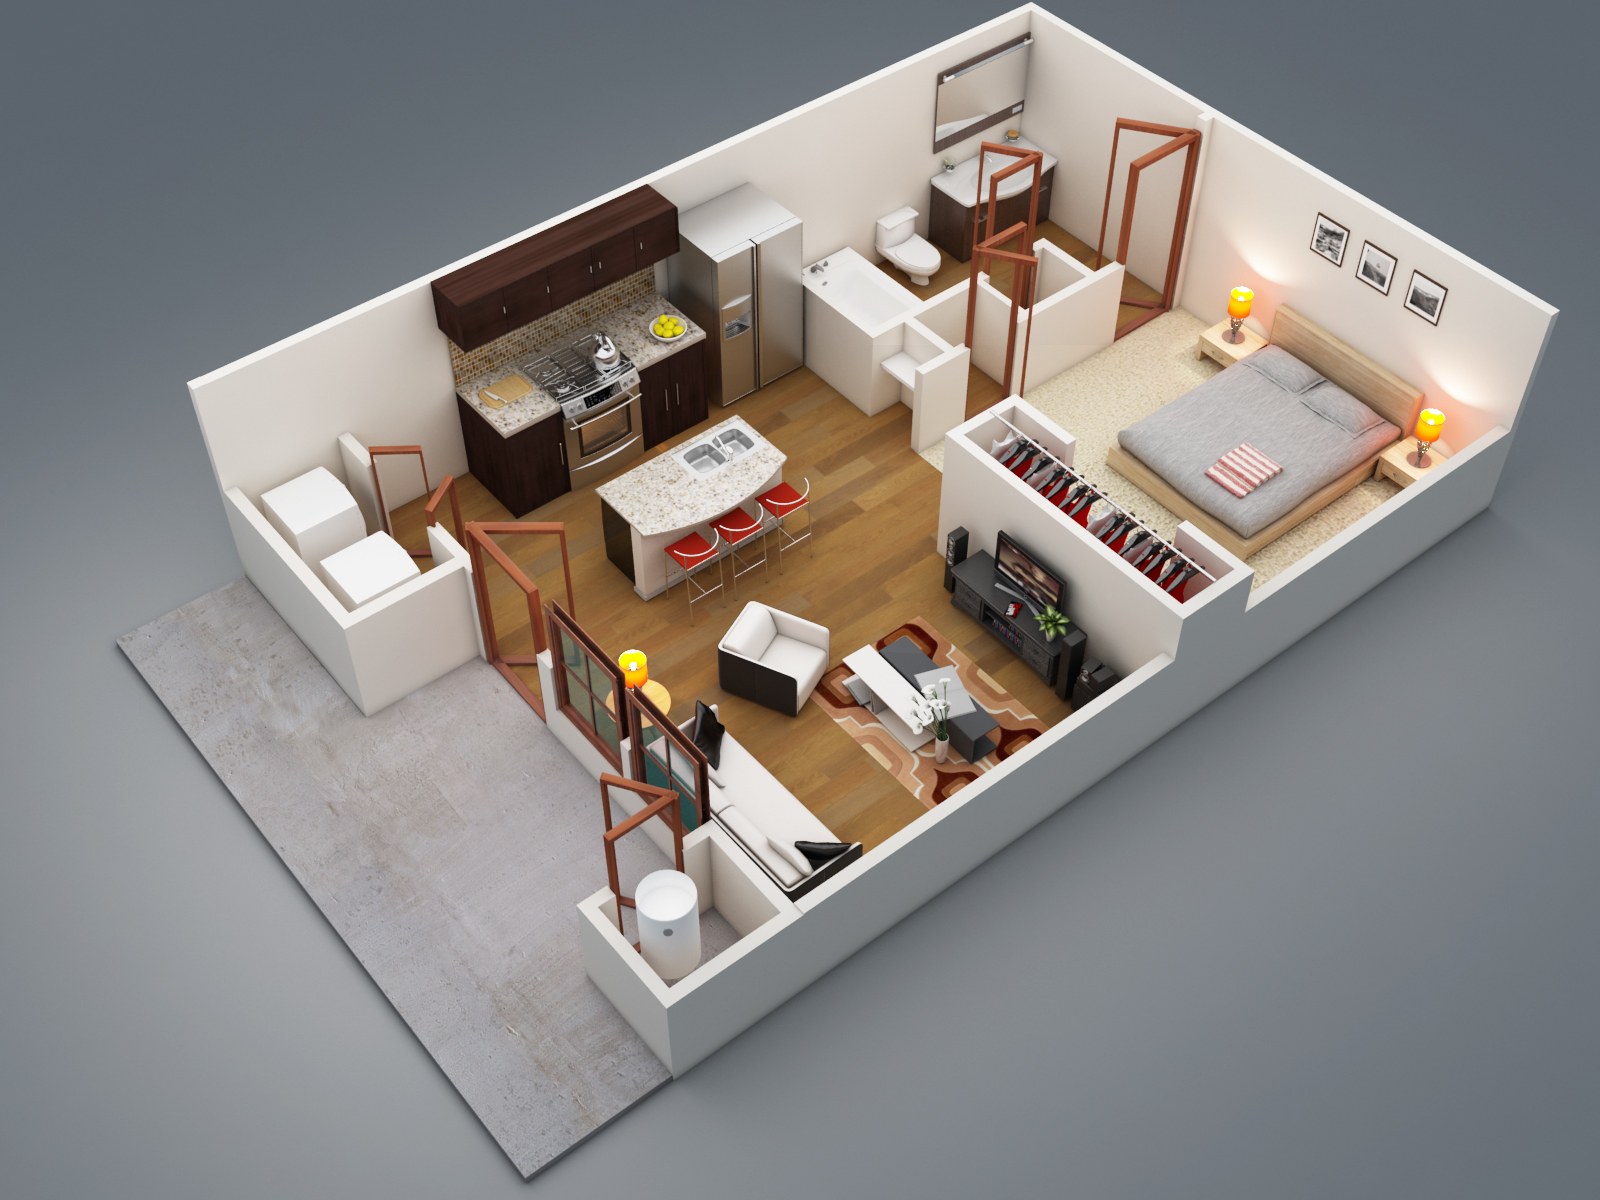 Дом на три комнаты. Floorplan 3d проекты. Планировка квартиры. Макет интерьера. Квартира студия планировка.